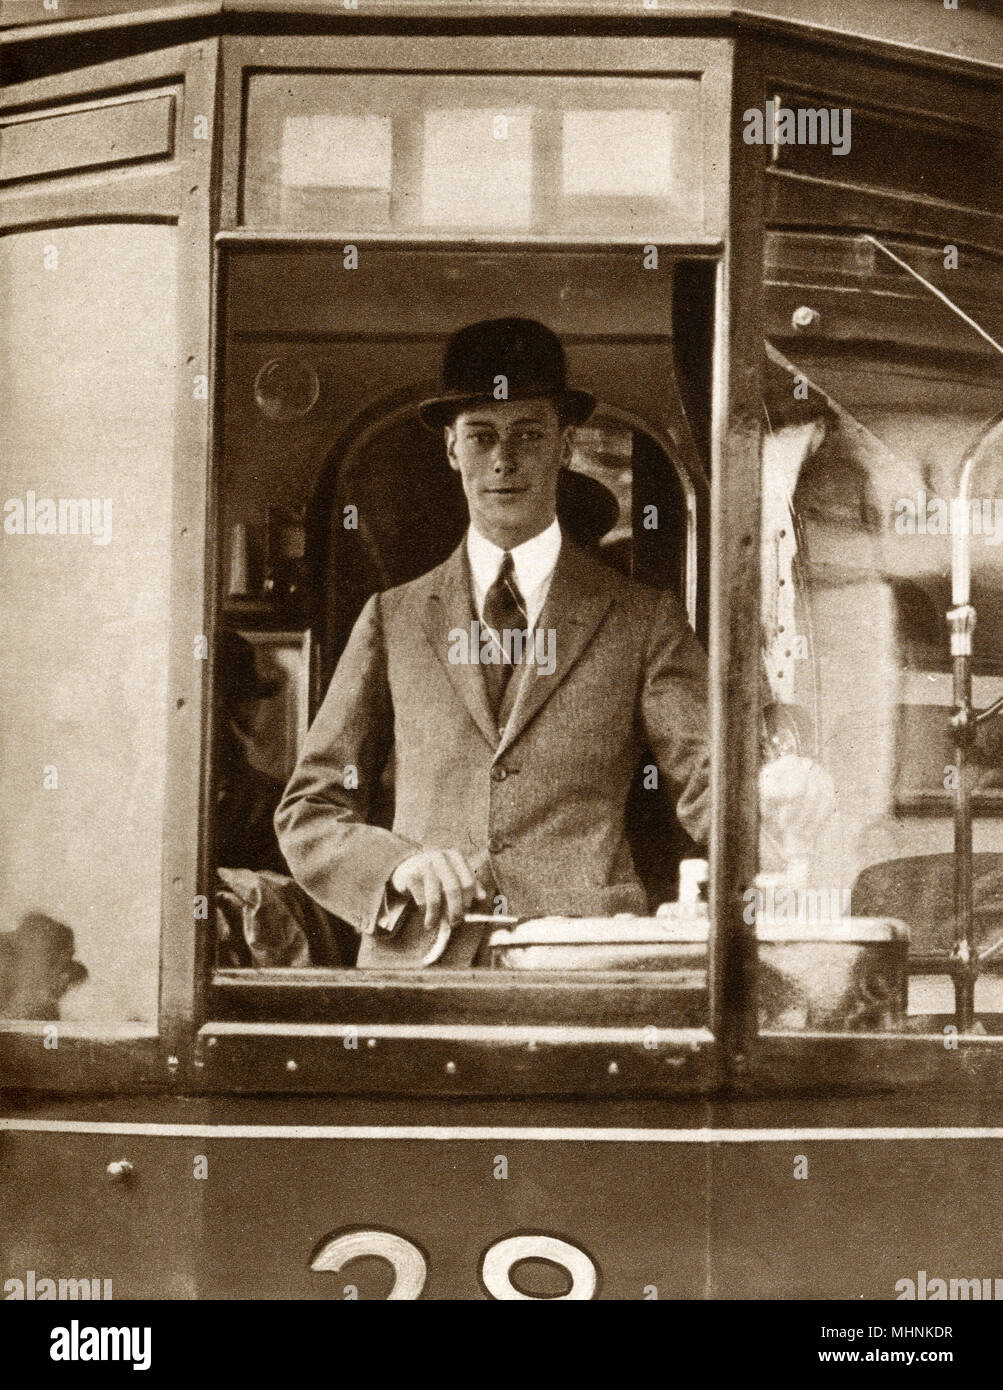 Alberto, duque de York (1895-1952) (más tarde el Rey Jorge VI), a los mandos de un tranvía de Glasgow, que conducía a más de una milla en el almacén! Fecha: 1924 Foto de stock